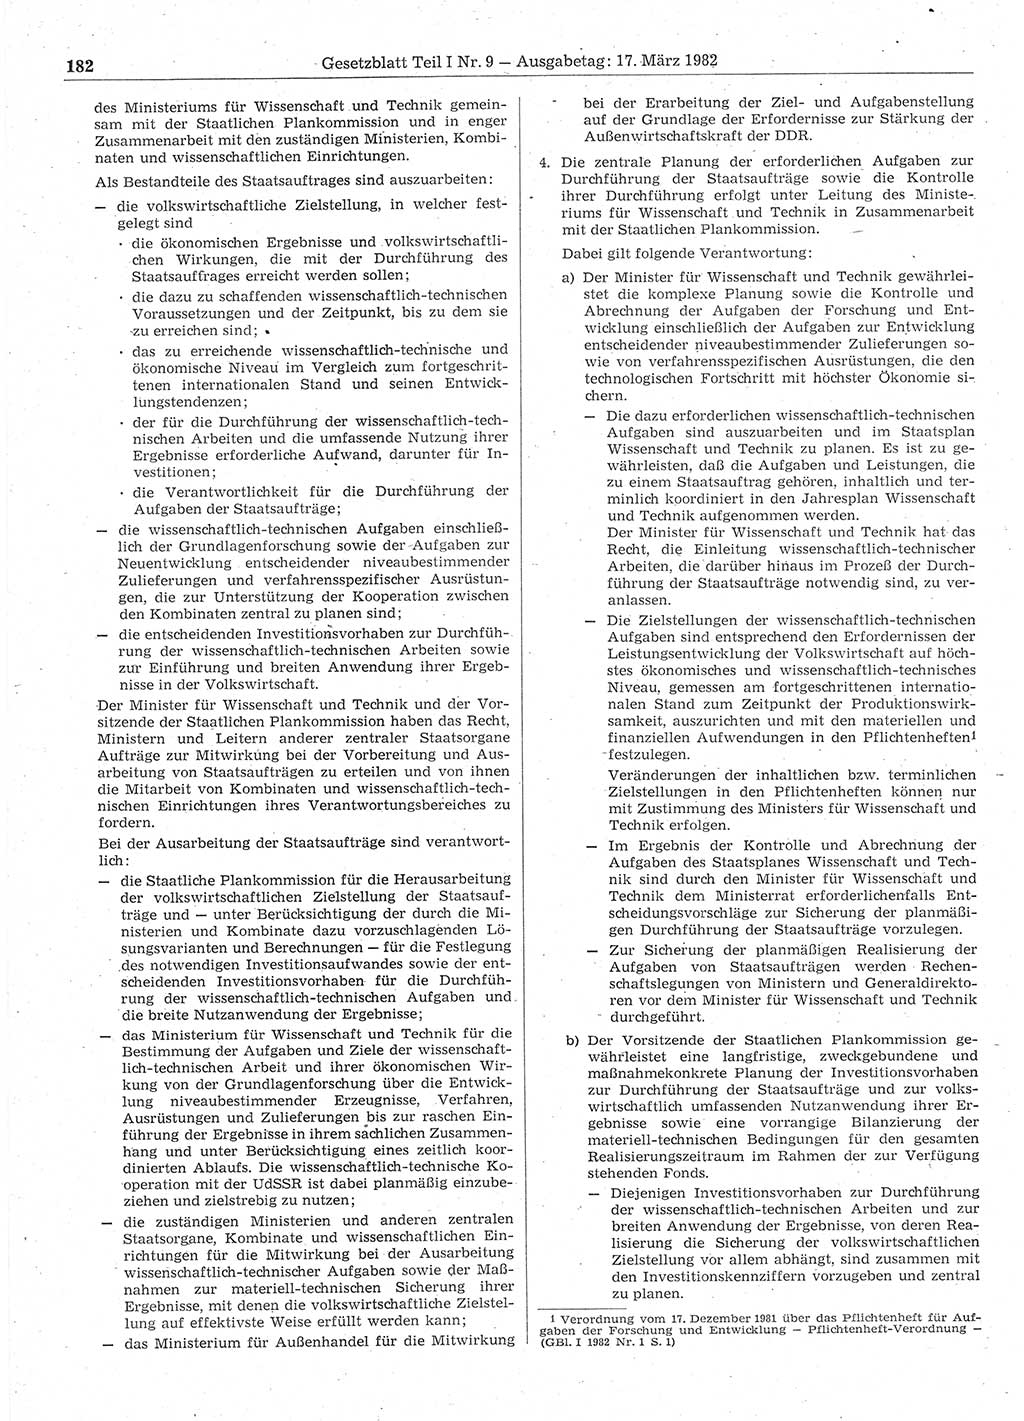 Gesetzblatt (GBl.) der Deutschen Demokratischen Republik (DDR) Teil Ⅰ 1982, Seite 182 (GBl. DDR Ⅰ 1982, S. 182)